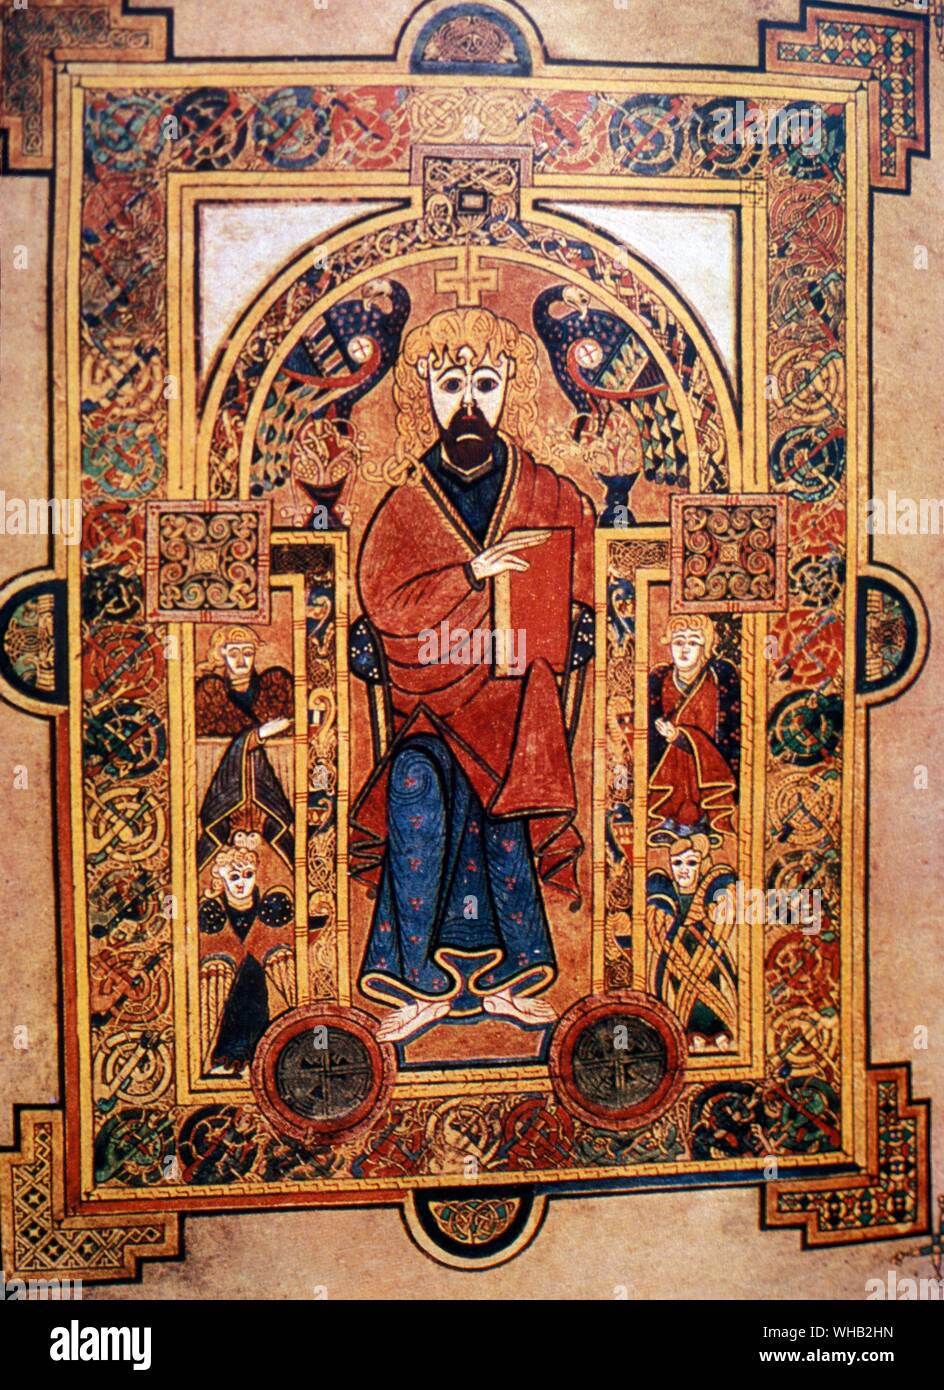 Libro di Kells. meno ampiamente noto come il Libro della Colomba. spalliere manoscritto illustrato, prodotta da Celtic monaci intorno all'ANNUNCIO 800 nello stile noto come arte isolana Foto Stock